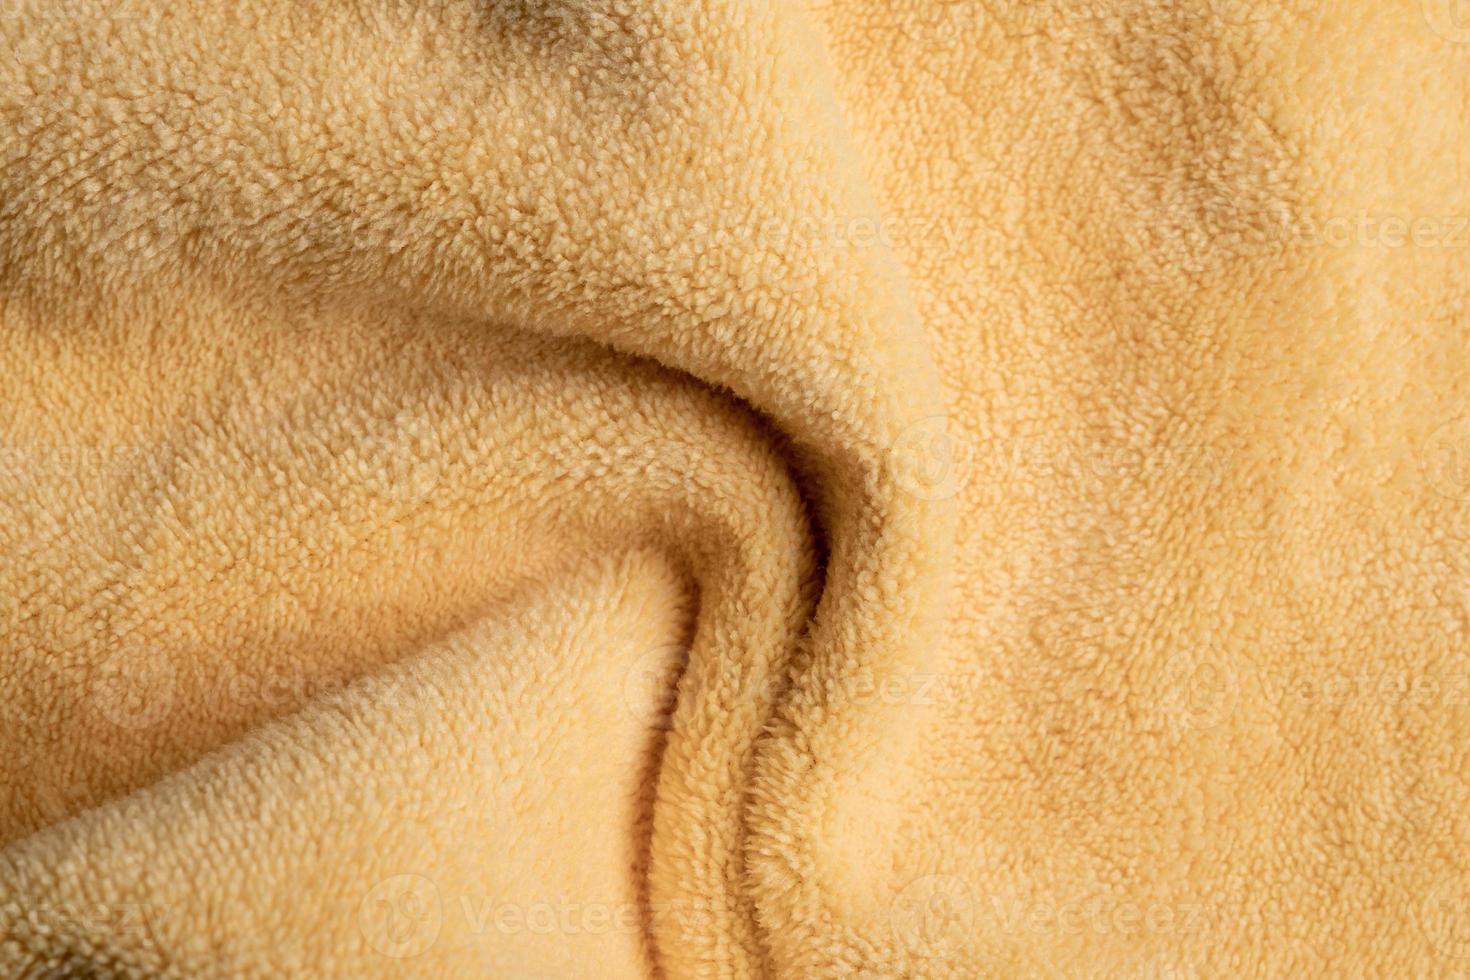 gele stof textuur achtergrond, abstract, close-up textuur van doek foto